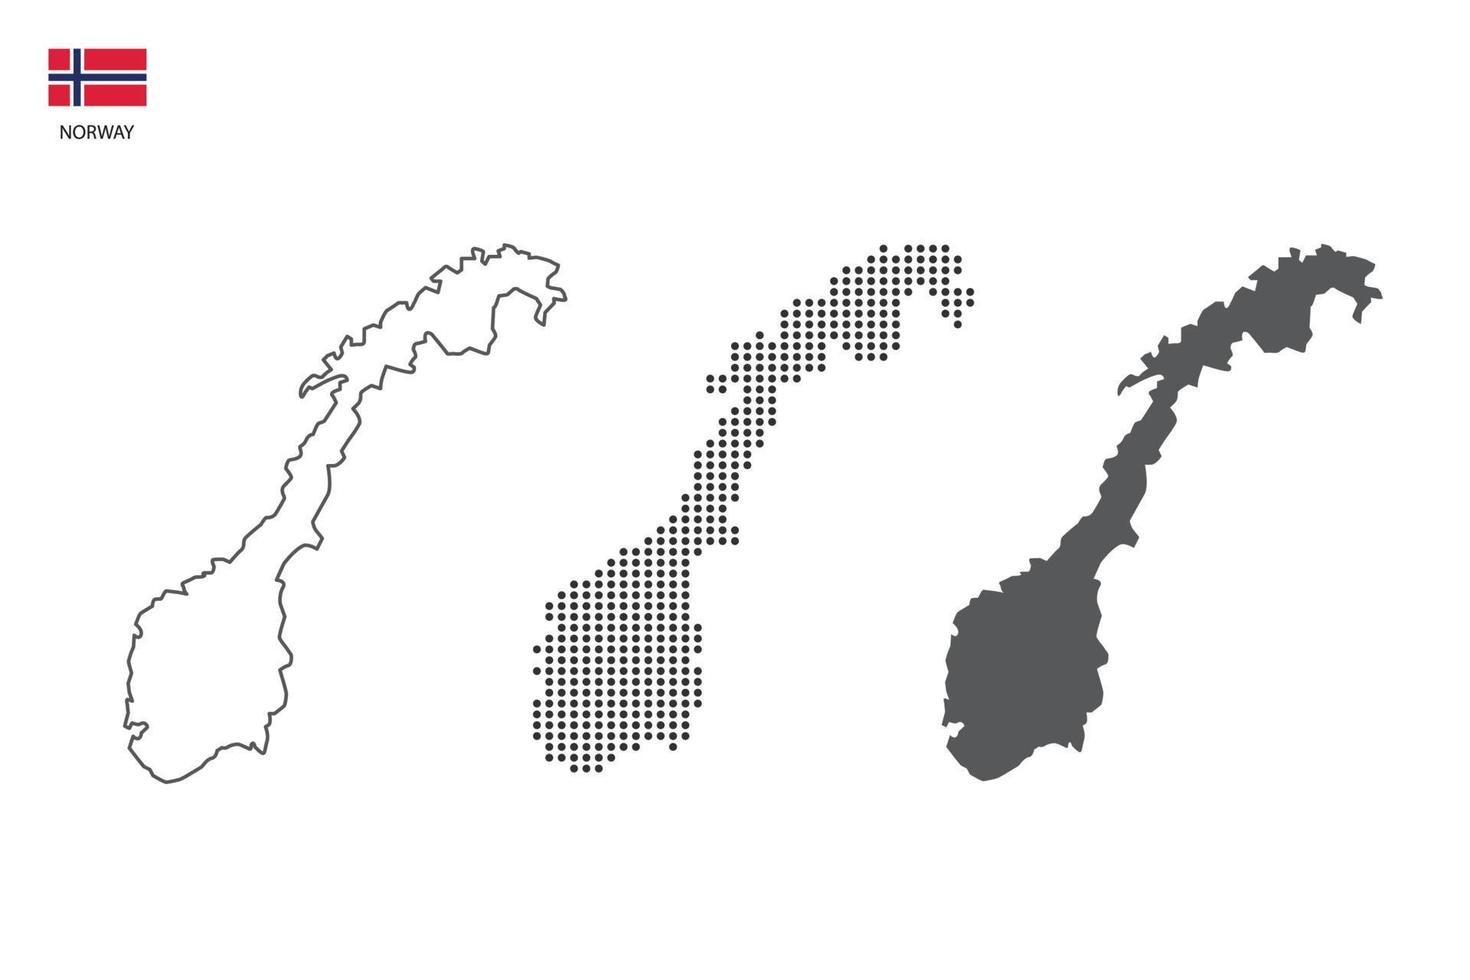 3 versões do vetor da cidade do mapa da noruega pelo estilo de simplicidade de contorno preto fino, estilo de ponto preto e estilo de sombra escura. tudo no fundo branco.